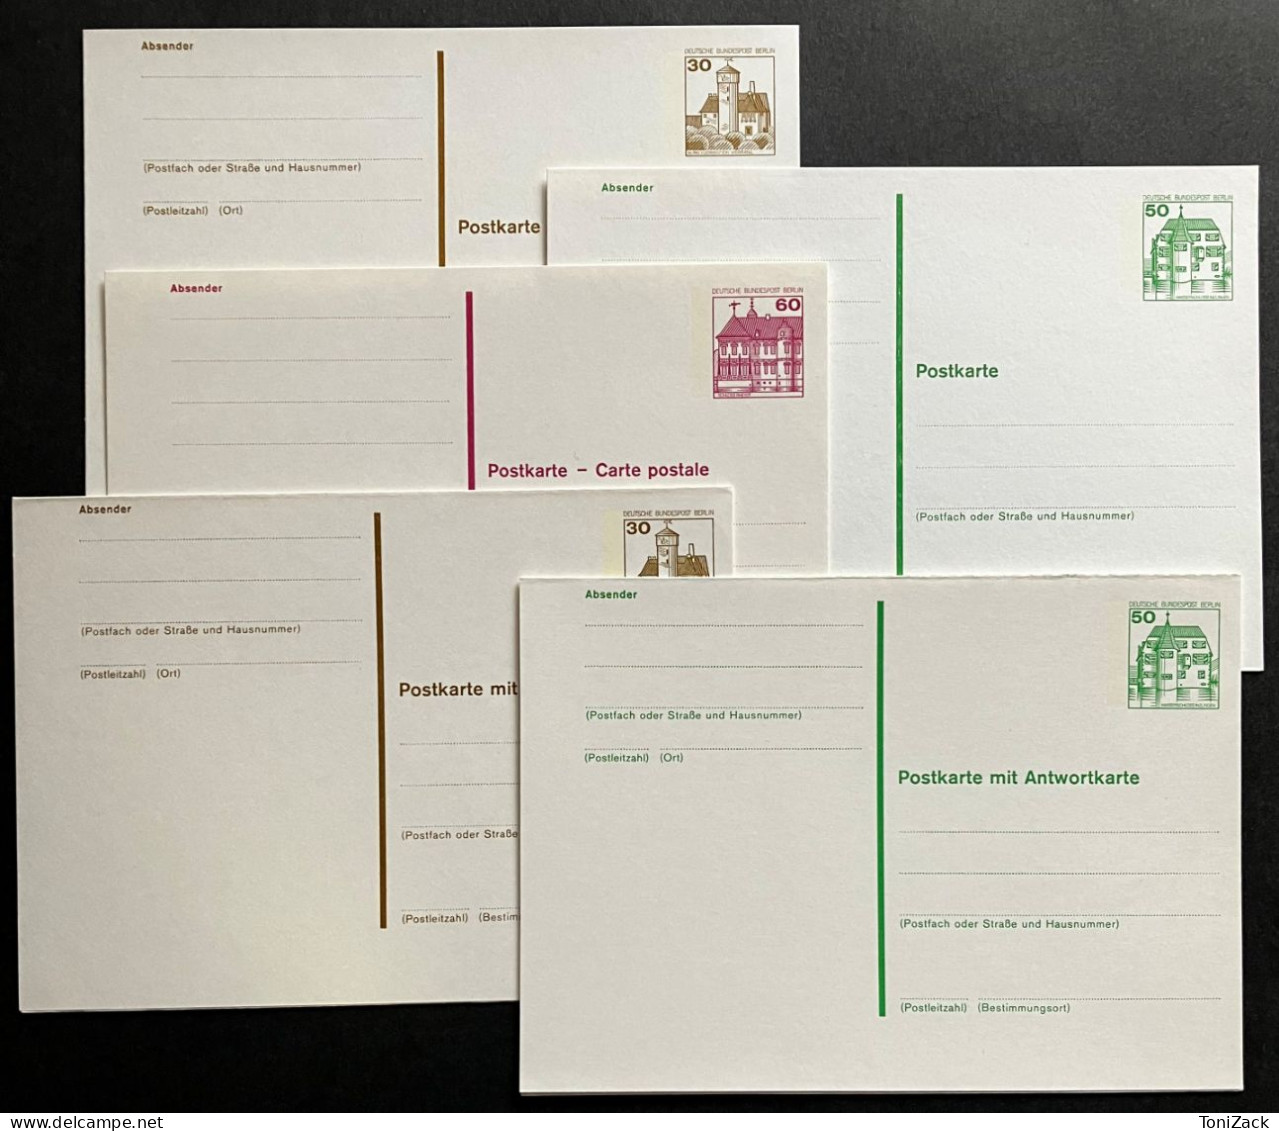 Berlin, P 115 - P 119, Postkarten-Set Von 1980, Dauerserie "Sehenswürdigkeiten", Ungebraucht - Postales - Nuevos